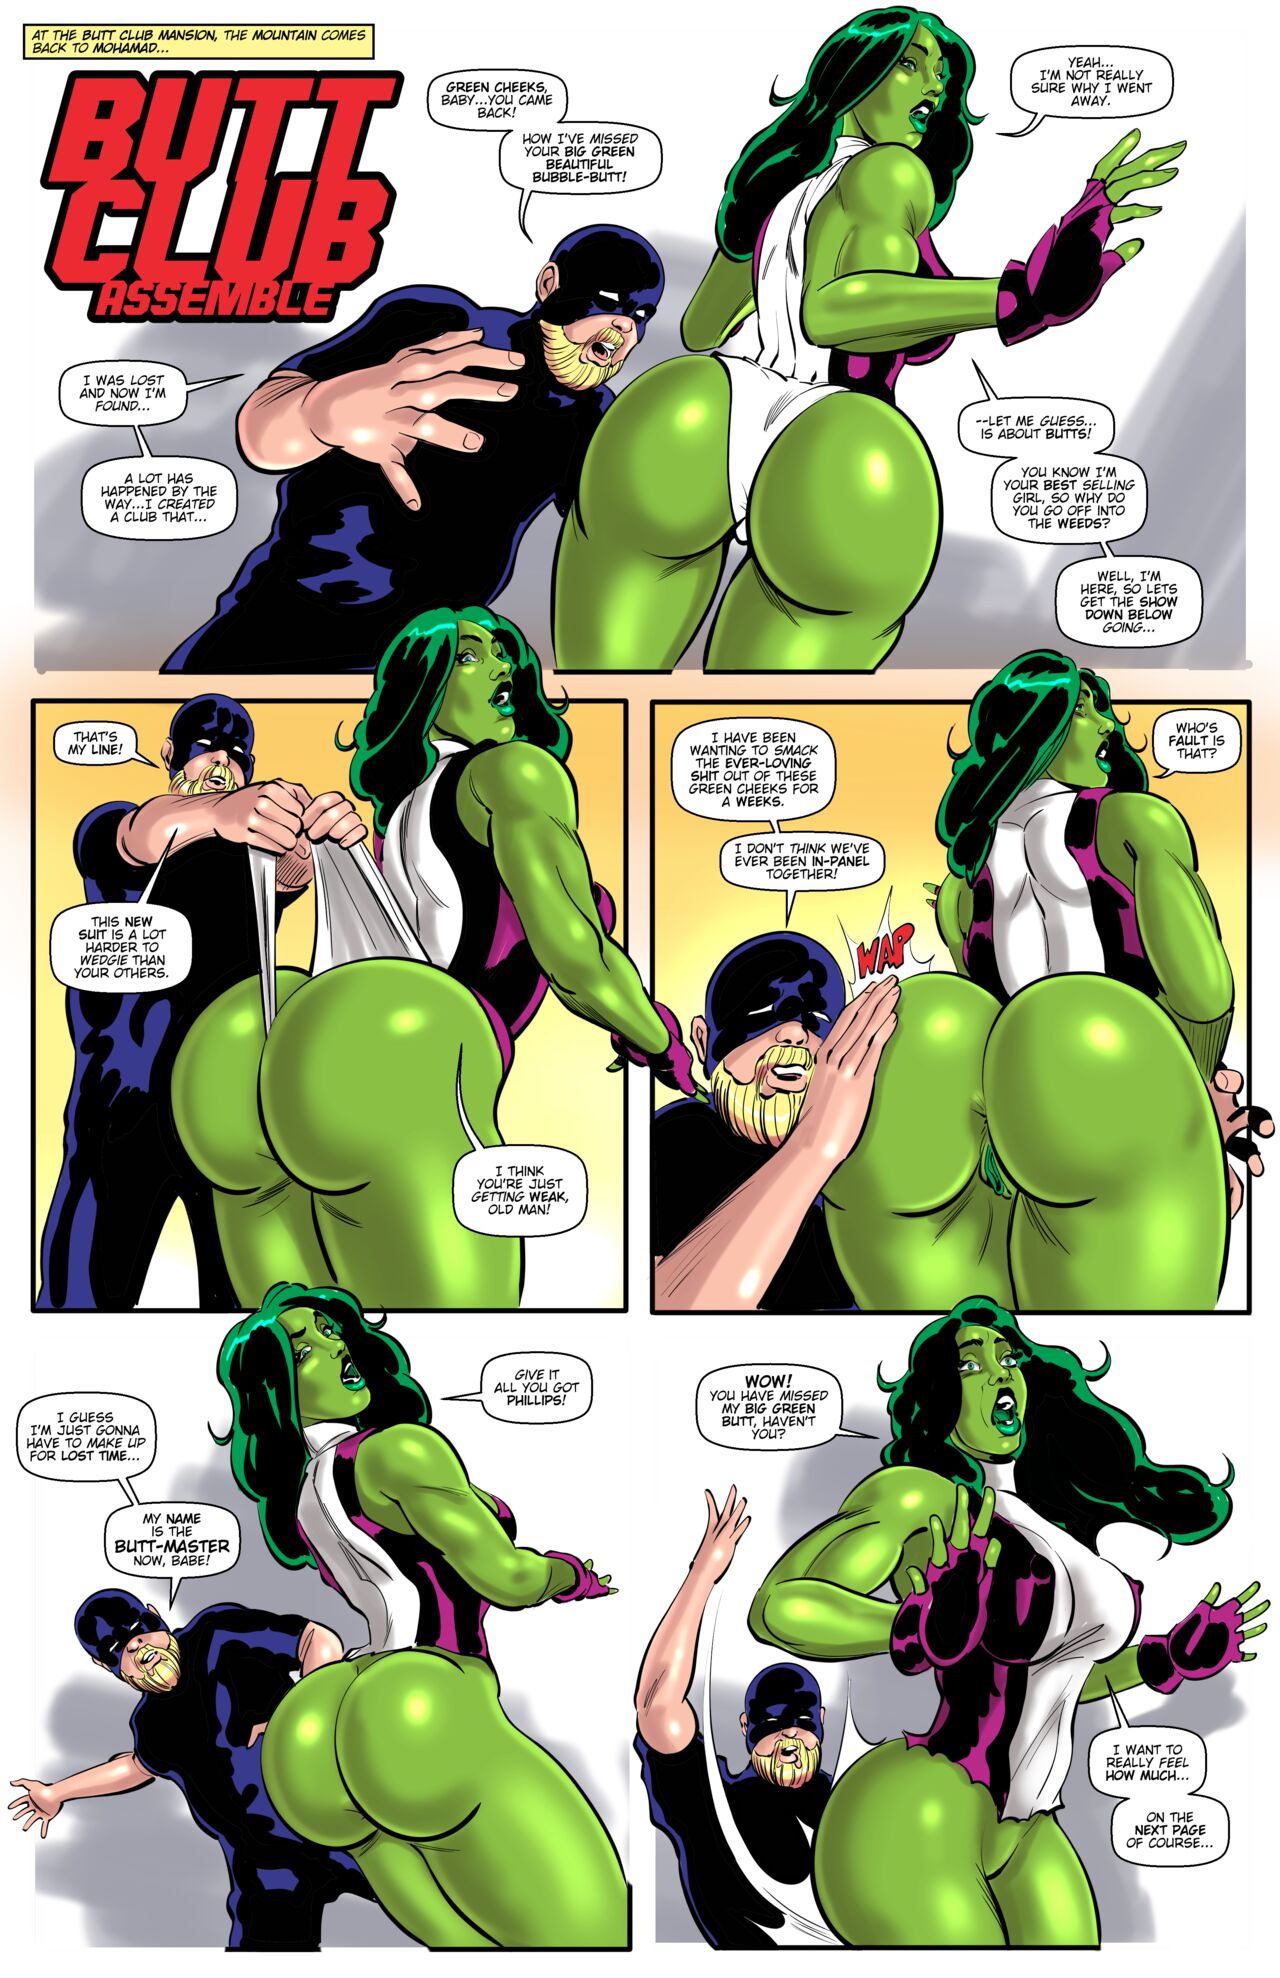 1280px x 1978px - Butt Club Assemble (Avengers) [Tim Phillips] - Porn Cartoon Comics